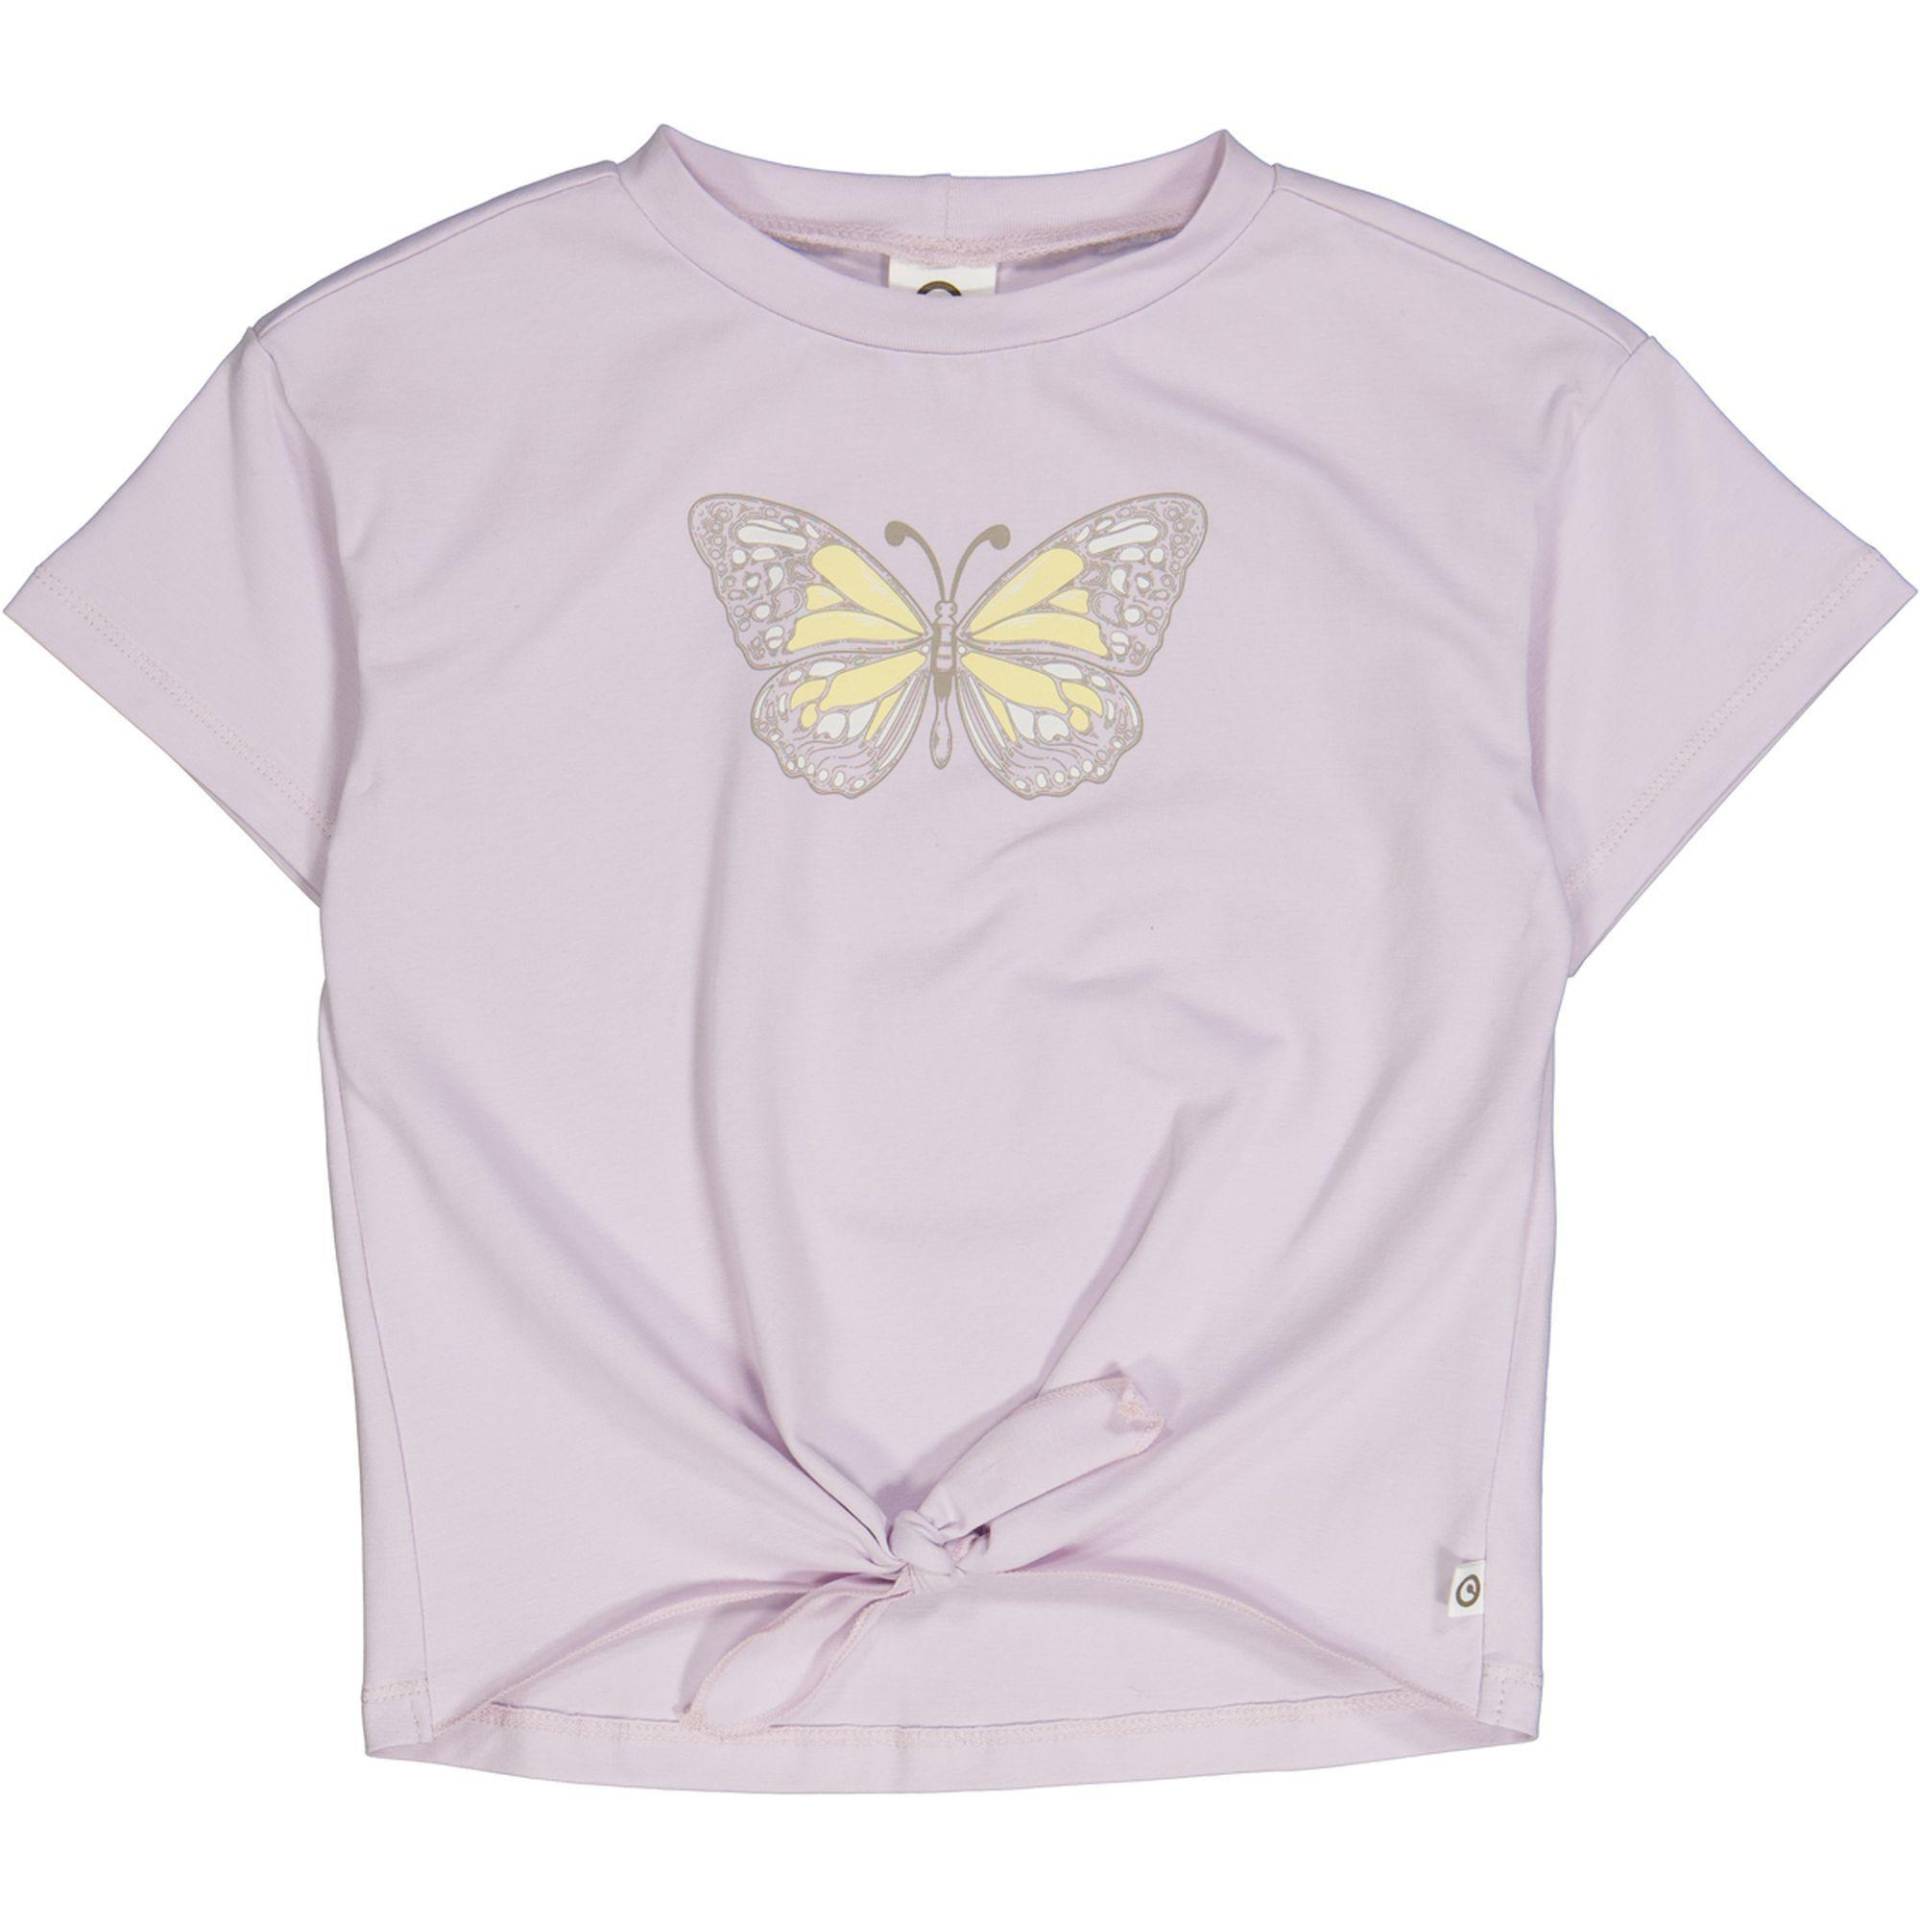 T-shirt Unisex Lavendel 134 von Müsli by Green Cotton